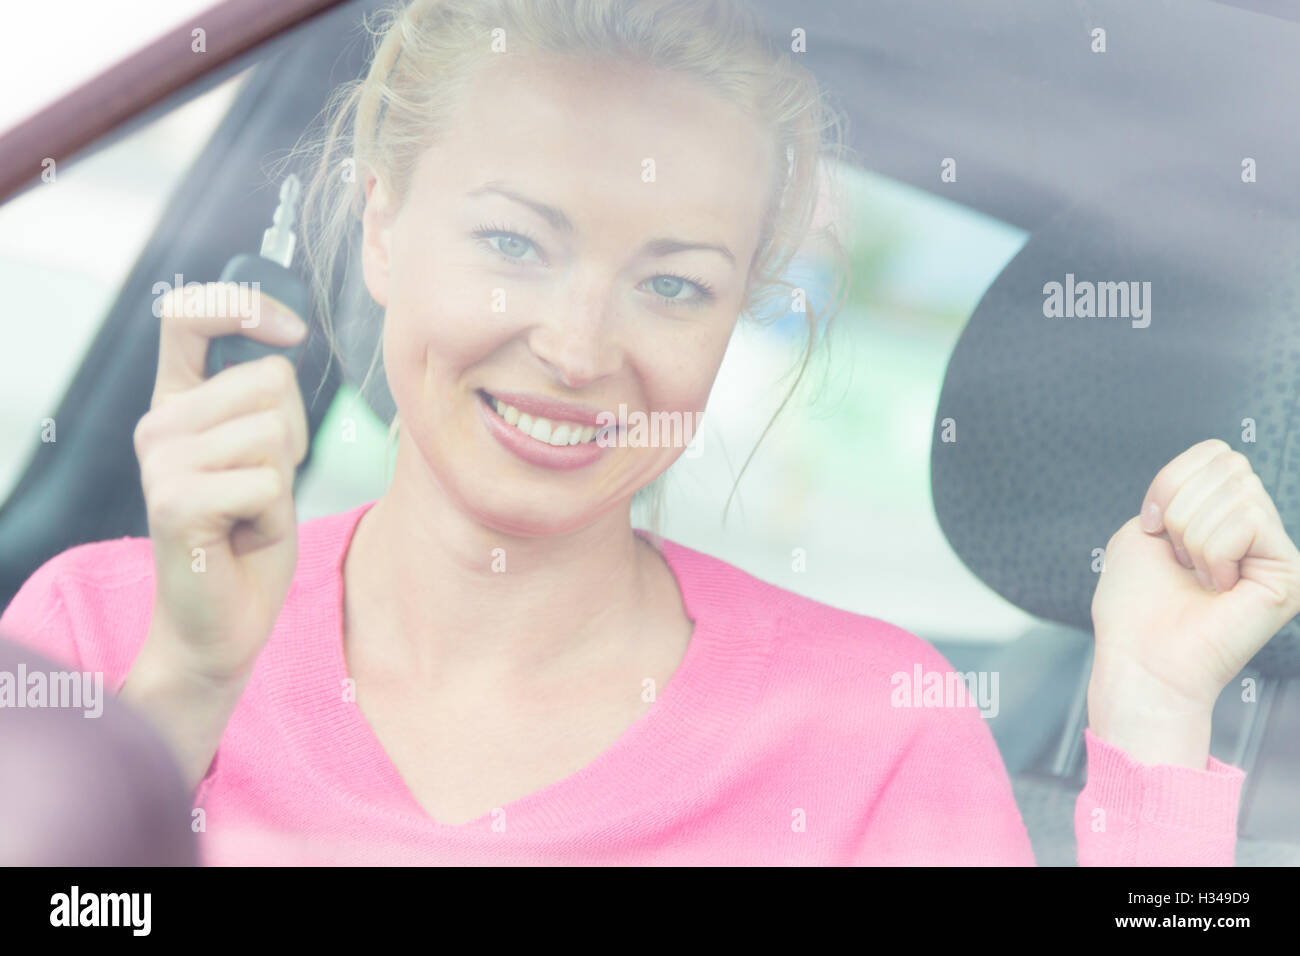 Donna autista mostrando le chiavi dell'auto. Foto Stock